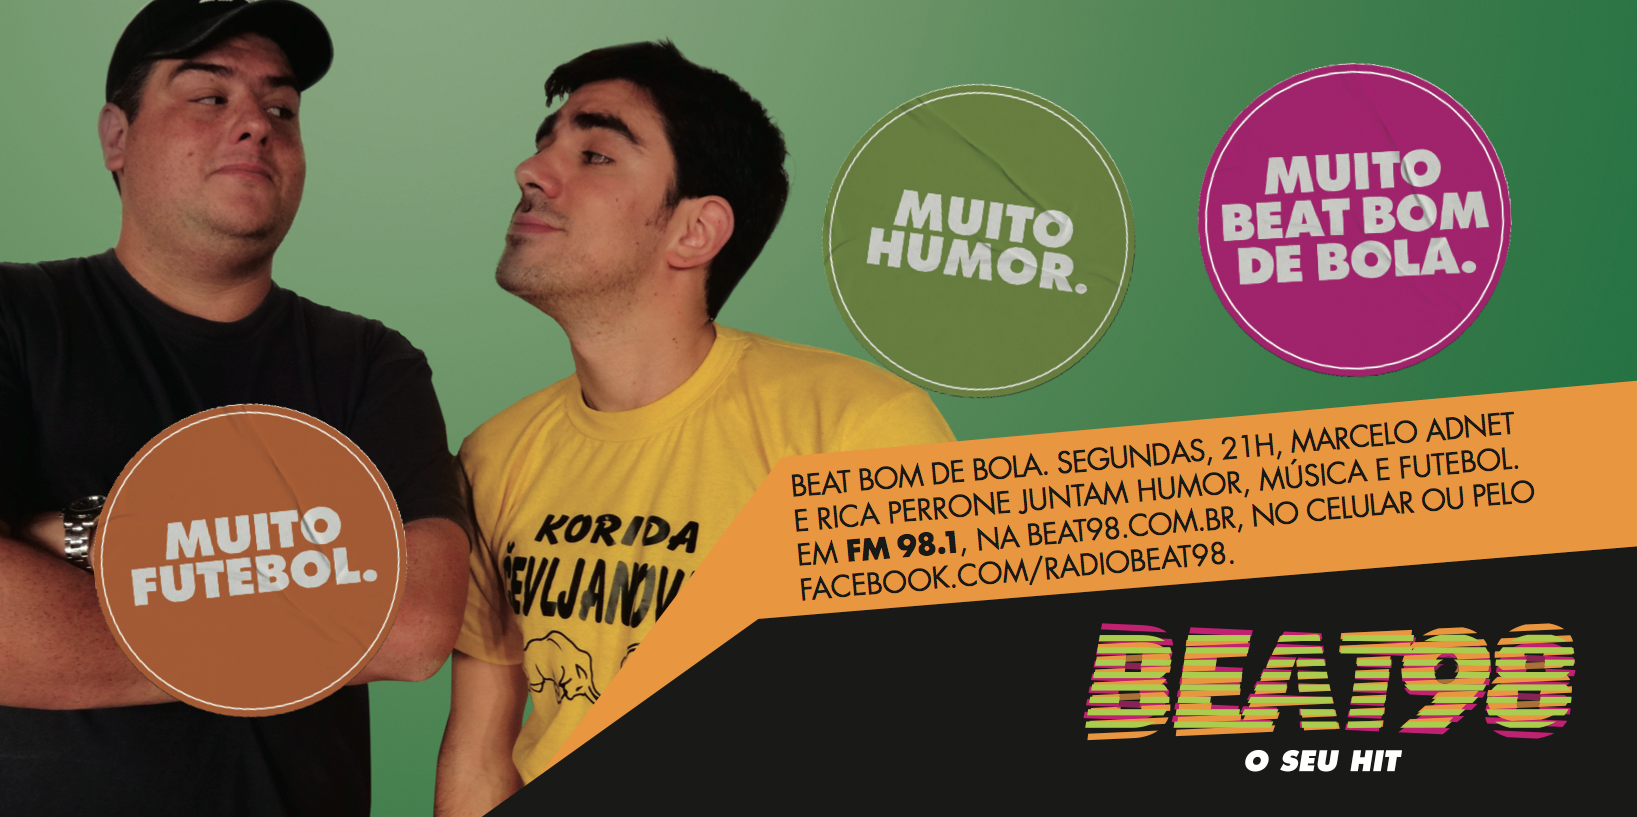 Beat Bom de Bola (19/08)